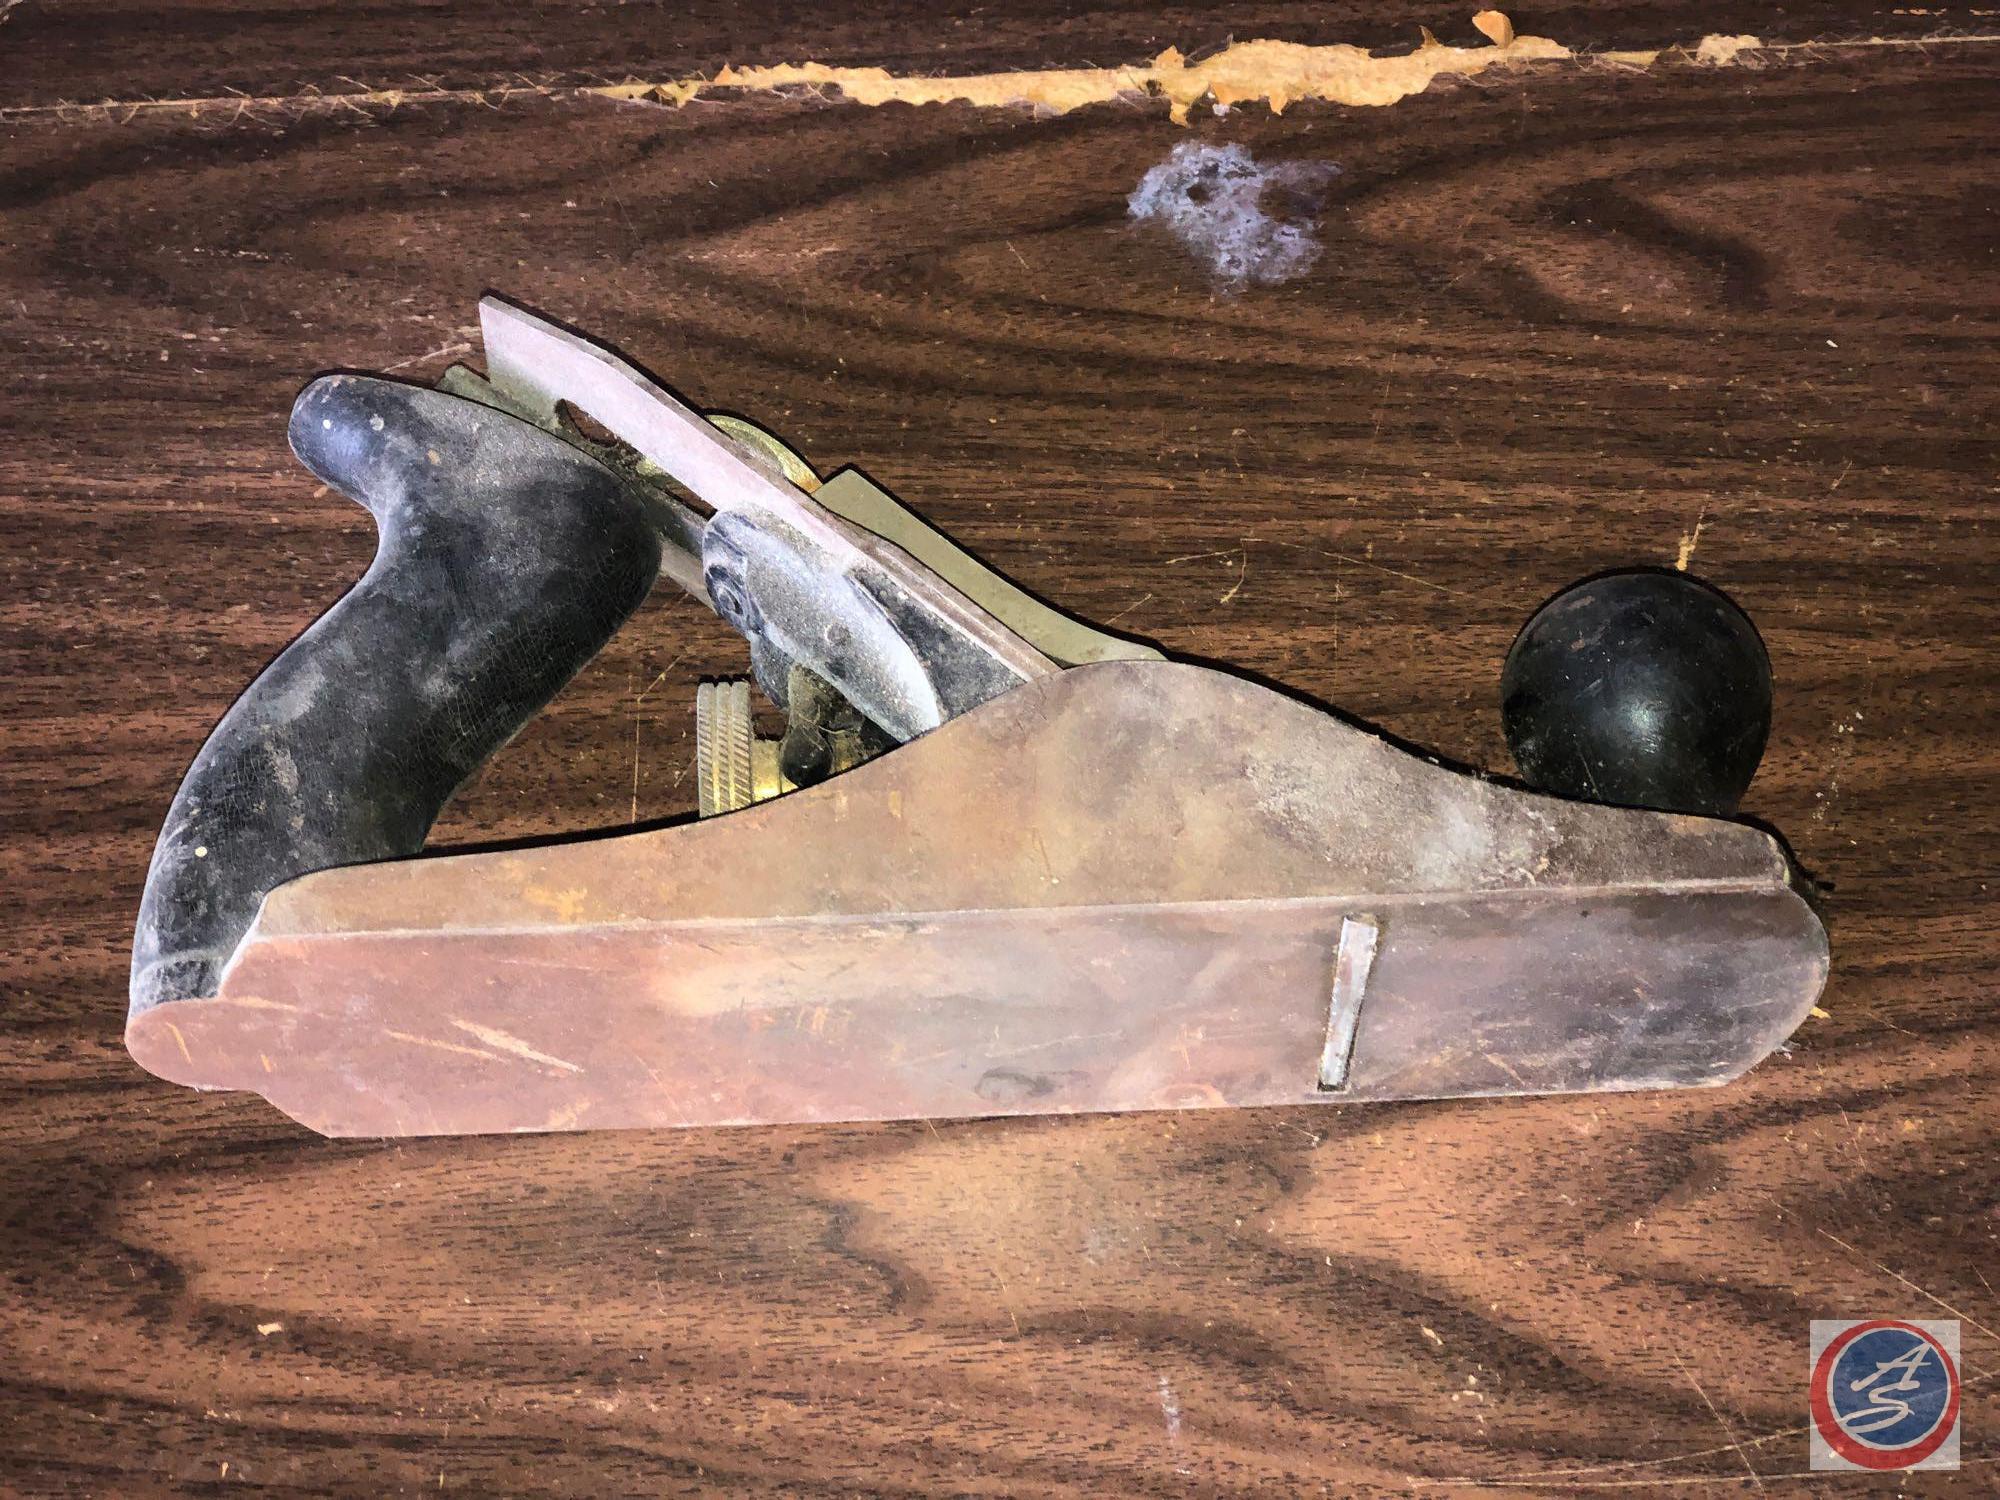 Vintage Stanley Hand Held Planer, Vintage Wooden Level, Metal Level and More